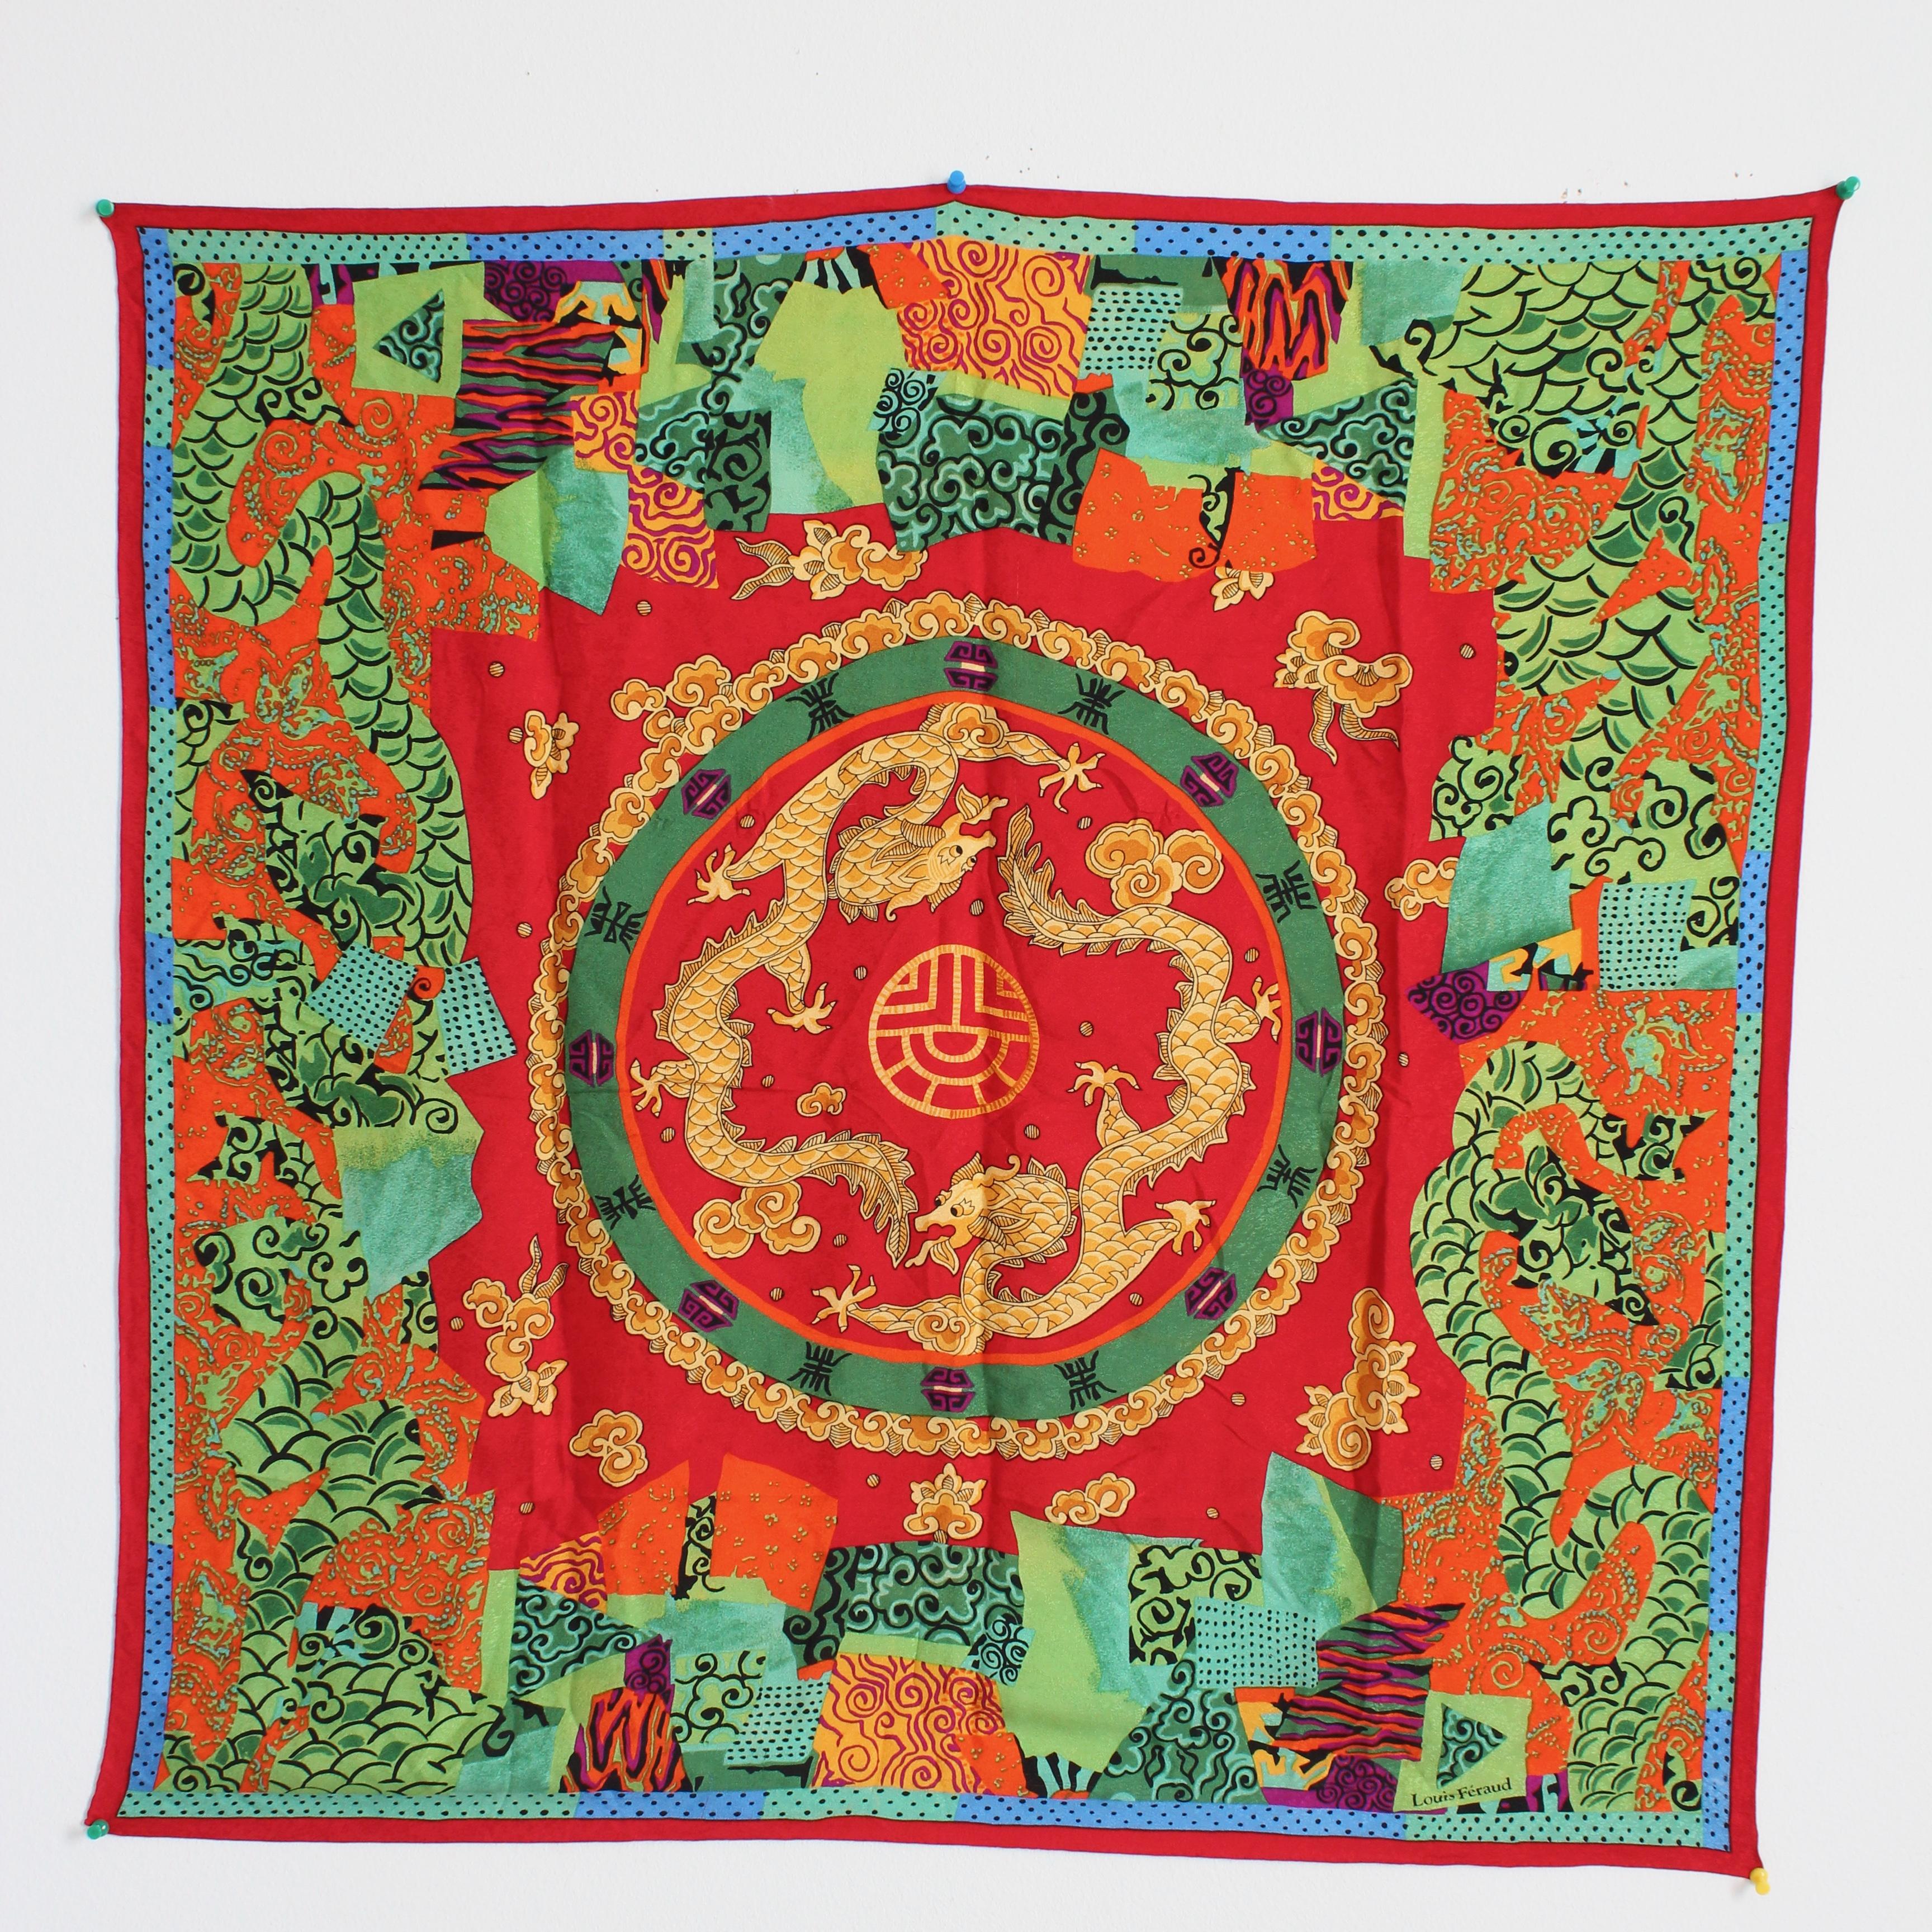 Ce ravissant foulard ou châle en jacquard de soie a été réalisé par Louis Feraud, vraisemblablement à la fin des années 1980. Réalisée dans une magnifique soie rouge, elle est ornée de dragons dorés dansants et d'autres motifs et symboles